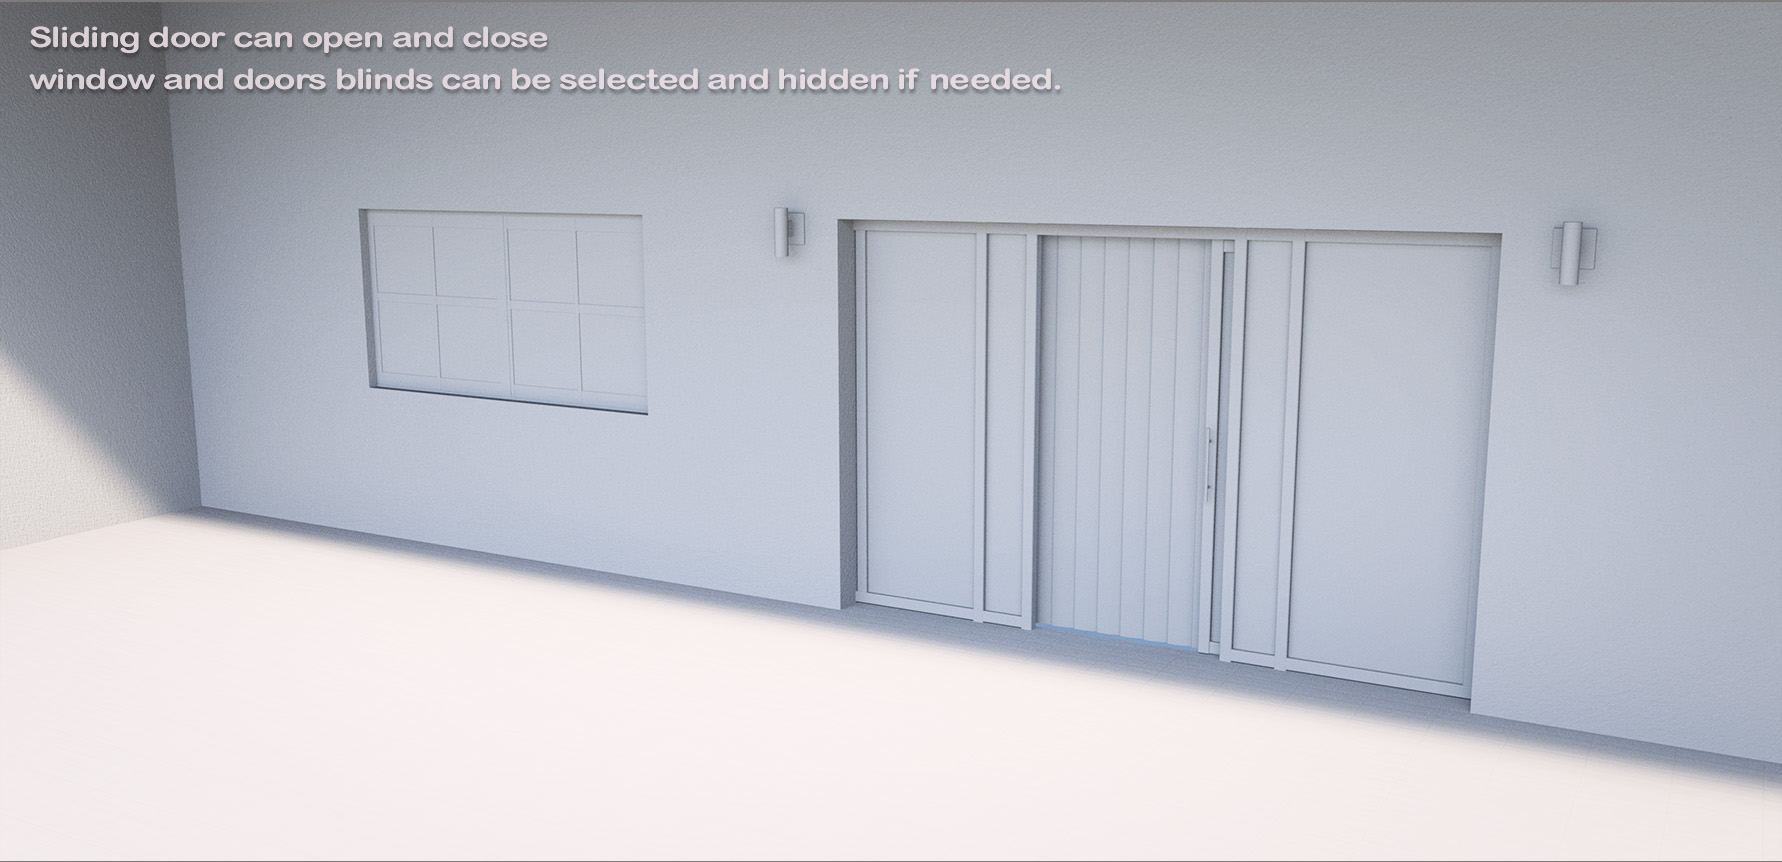 Hotel Balcony by: , 3D Models by Daz 3D